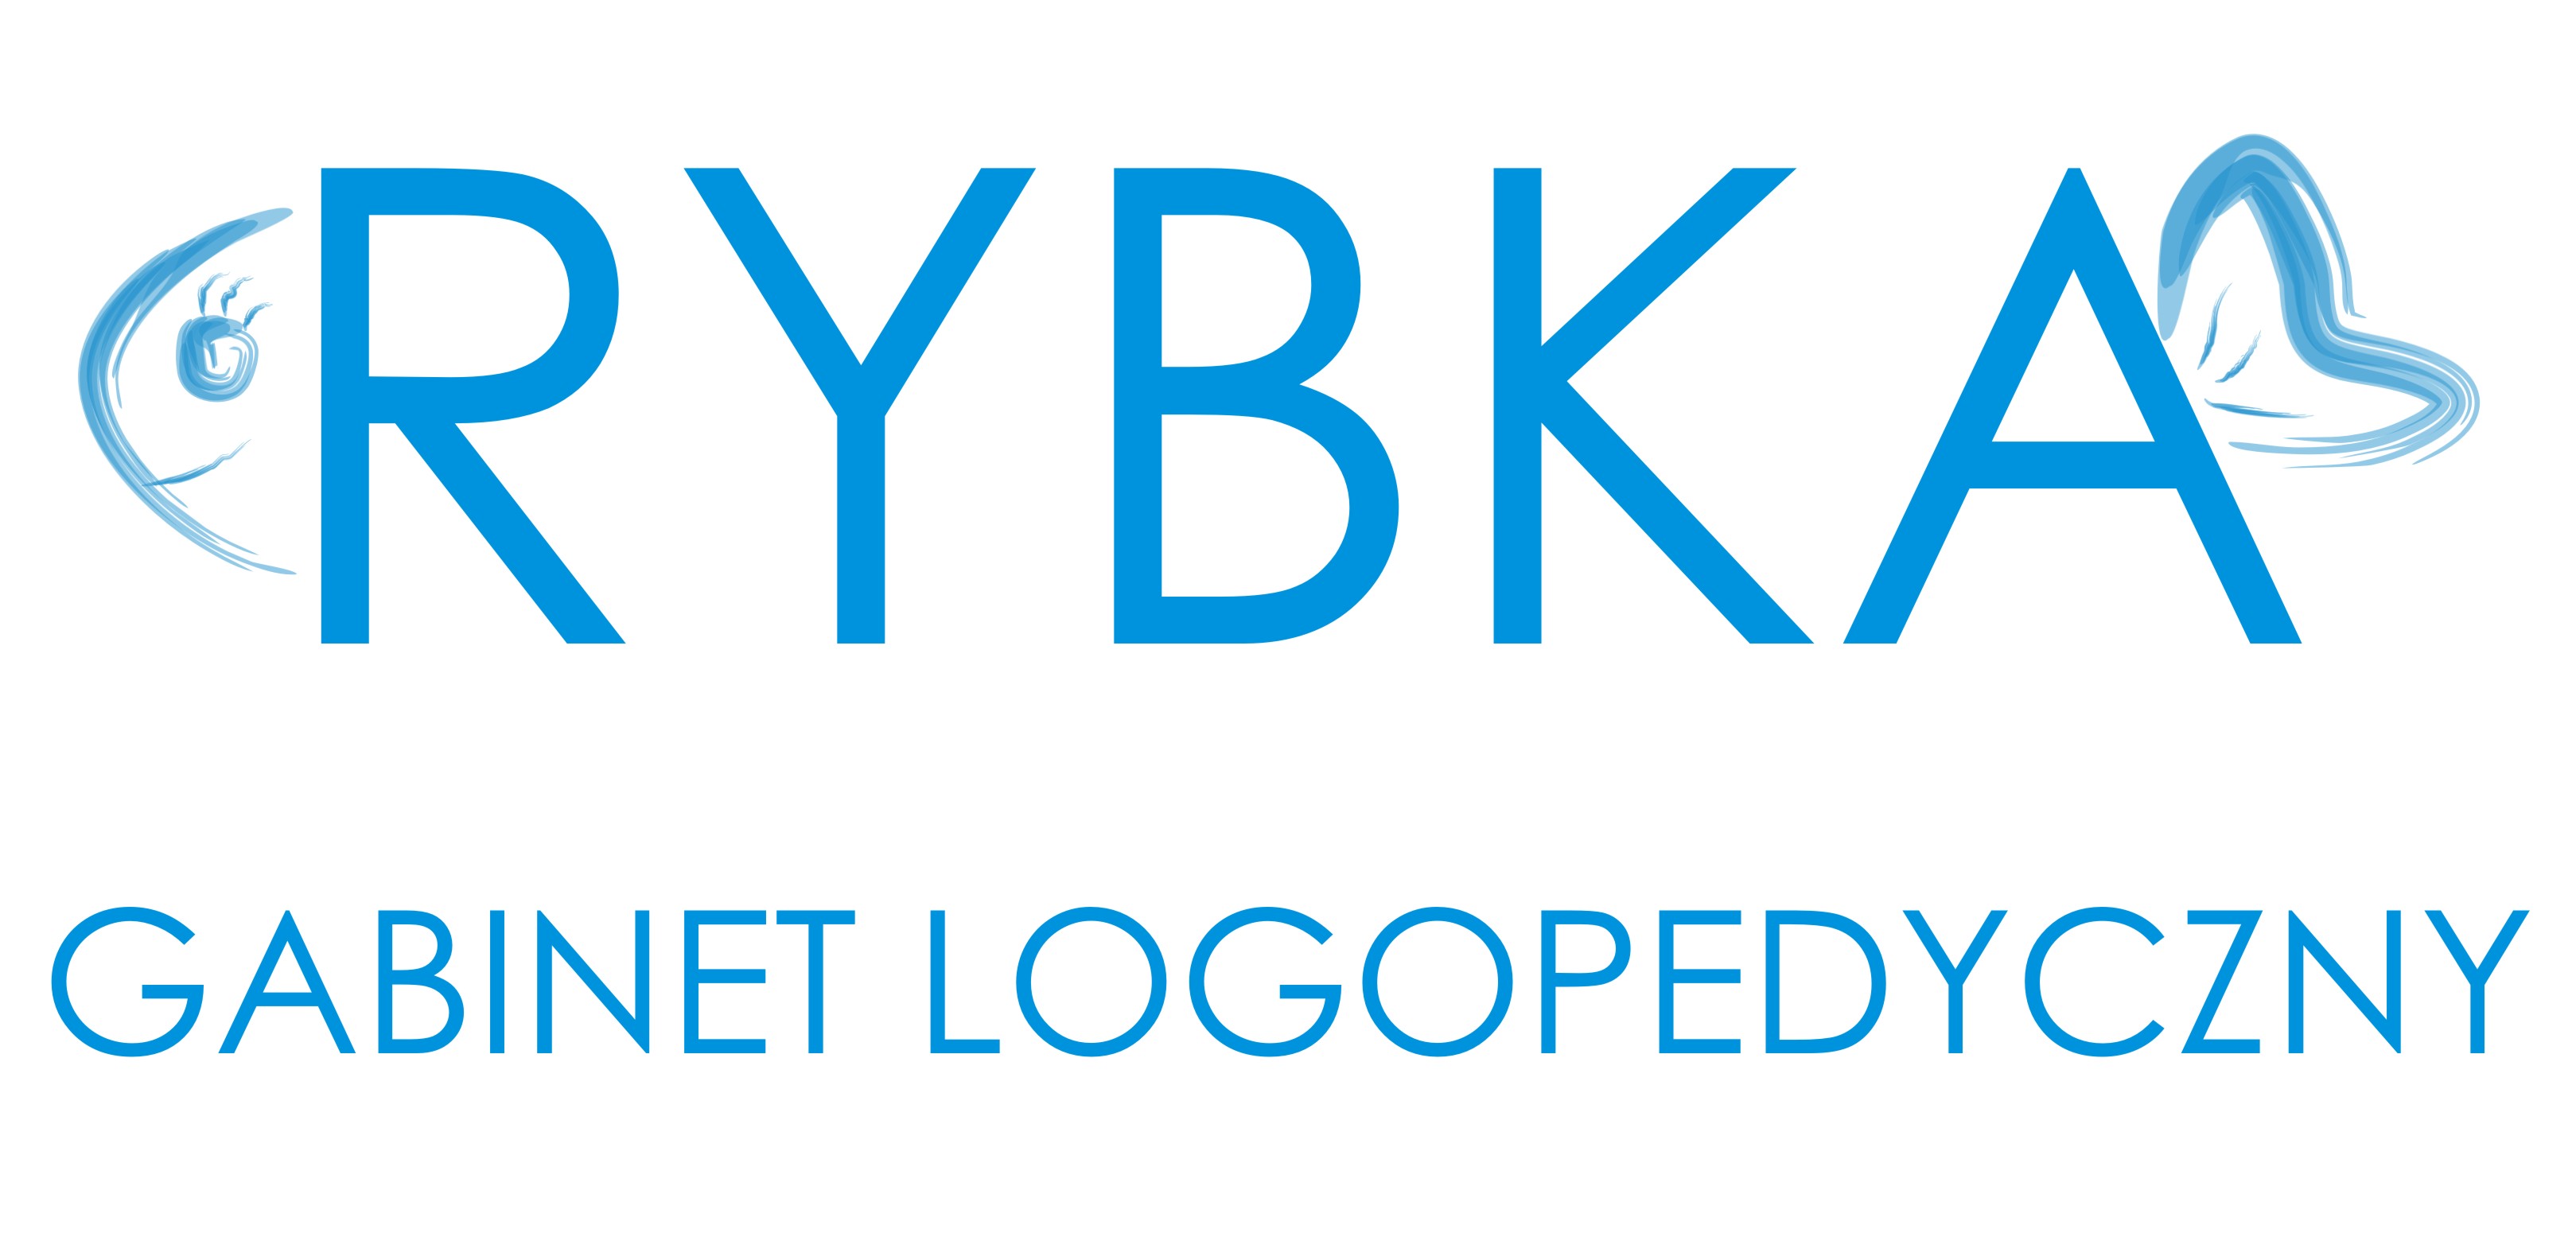 logopedarybka.pl